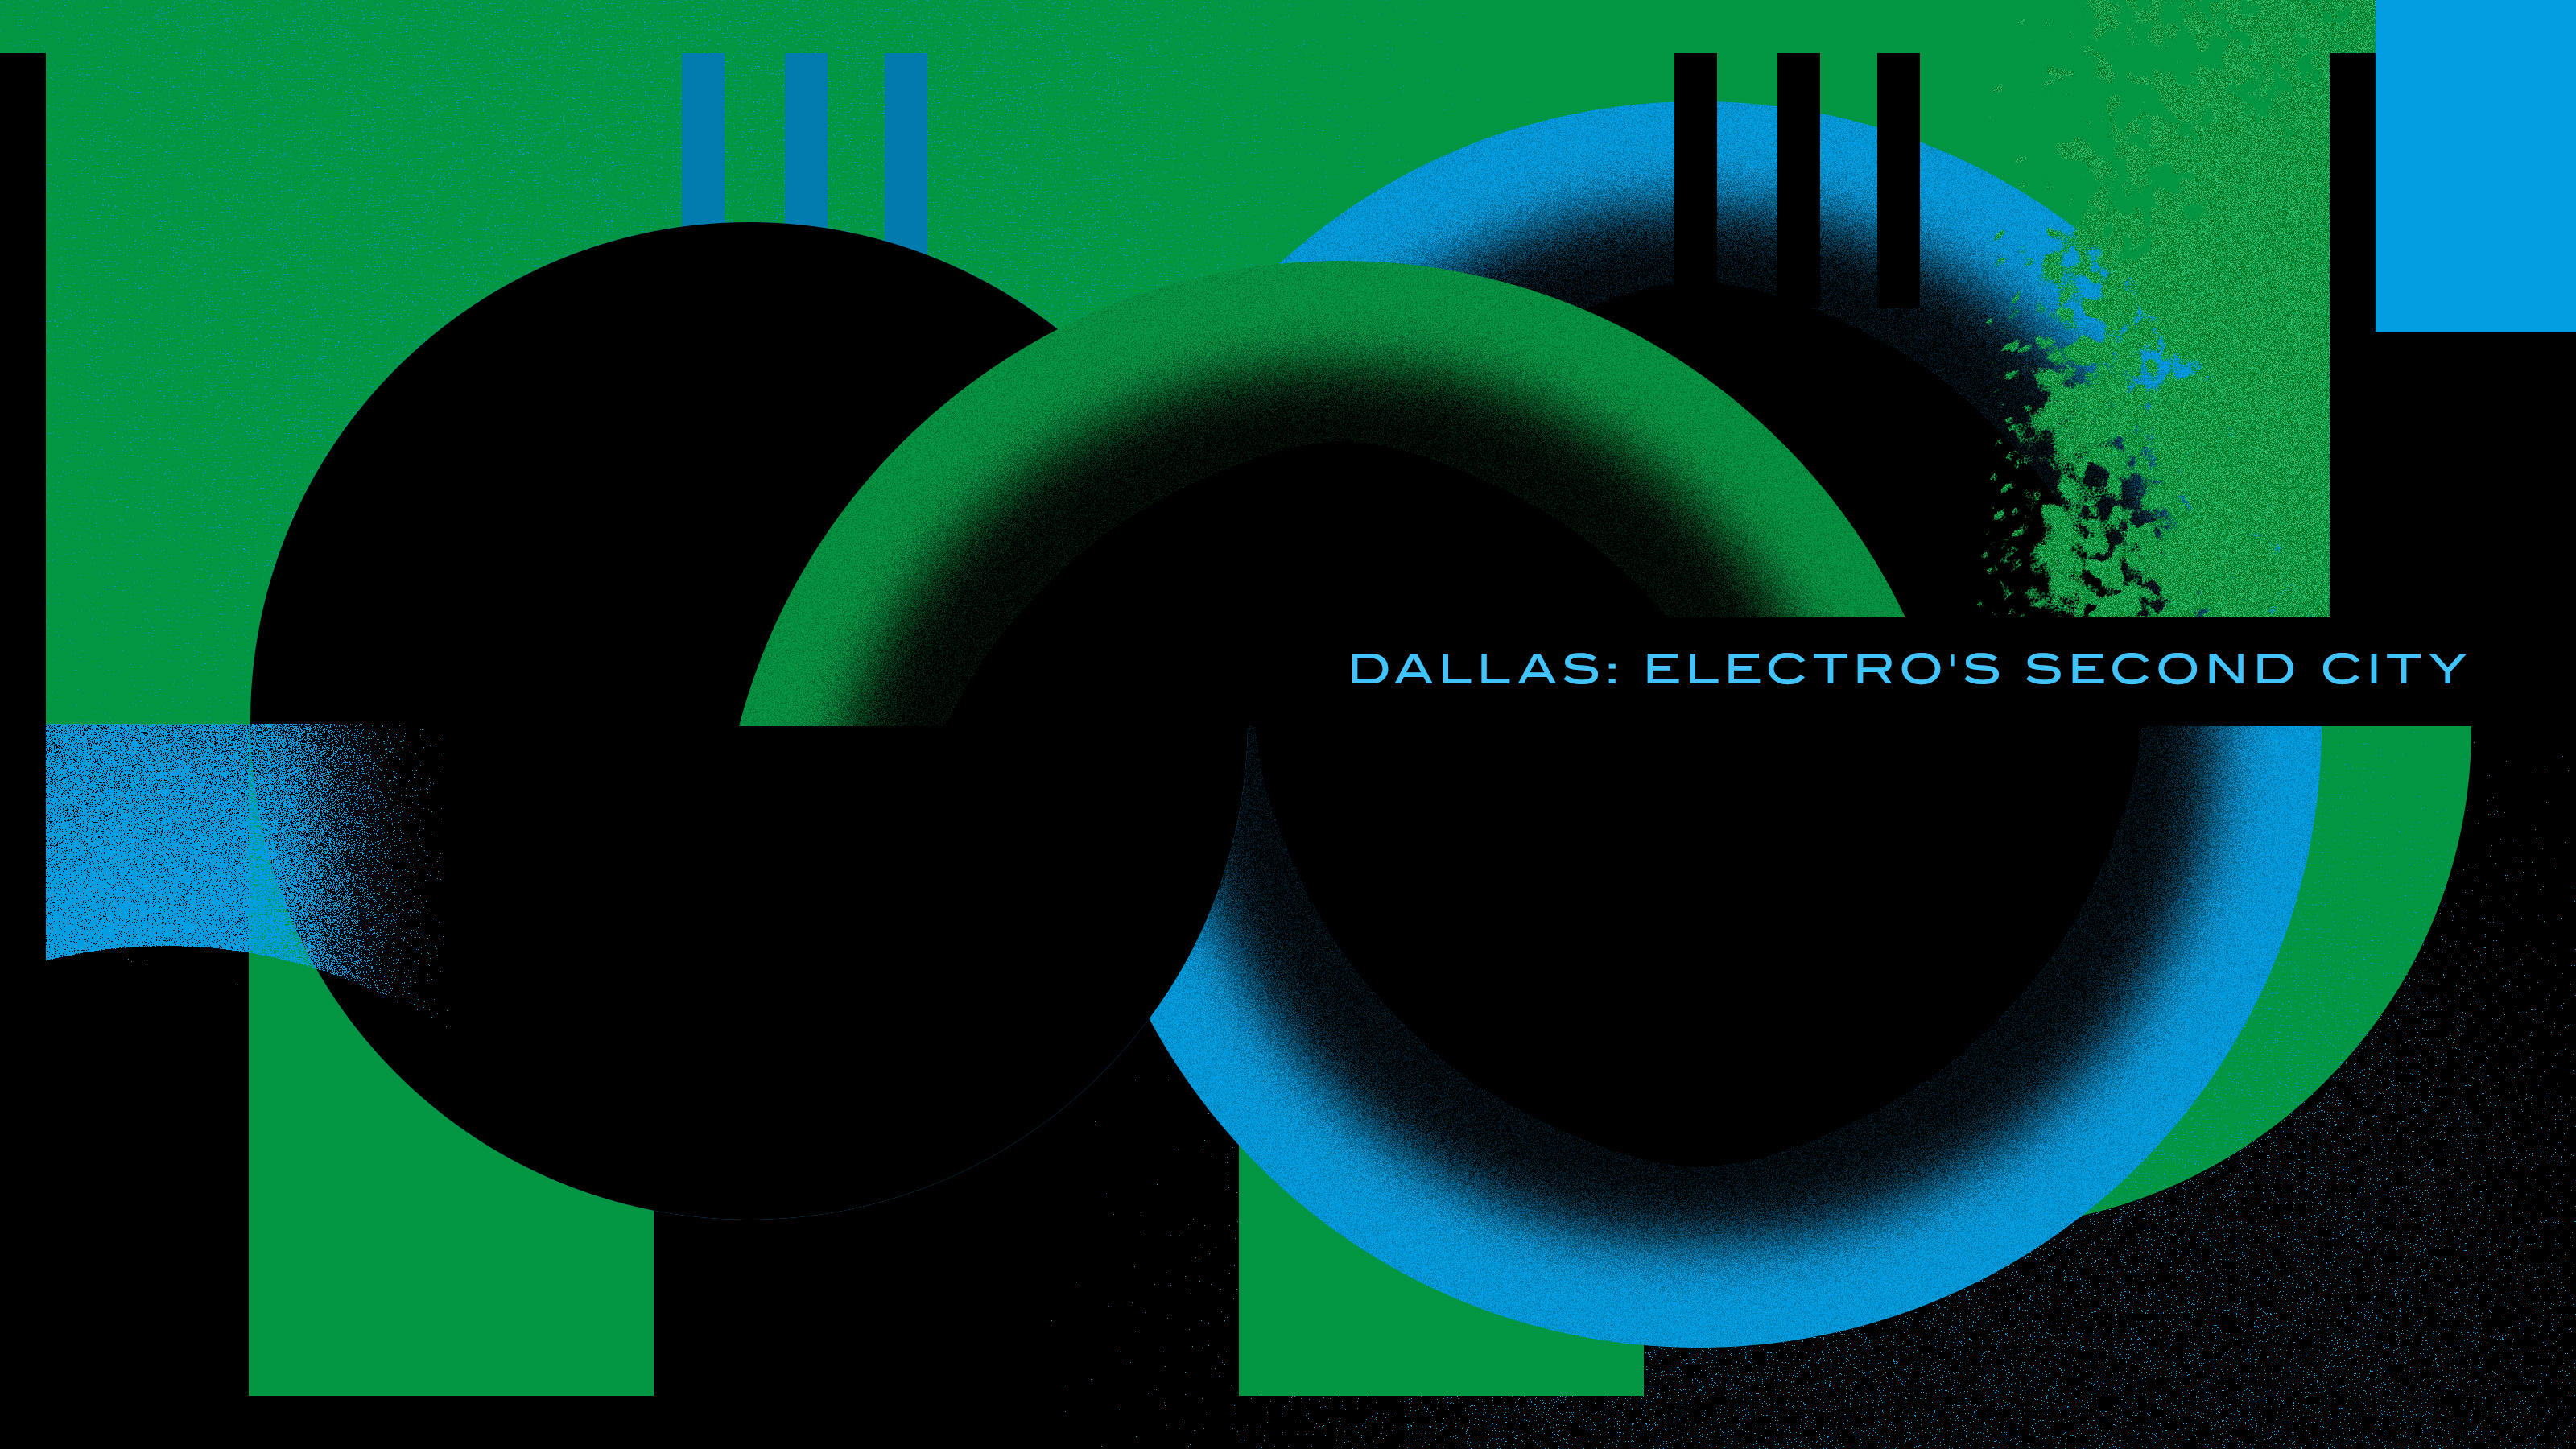 Dallas: Electro's second city